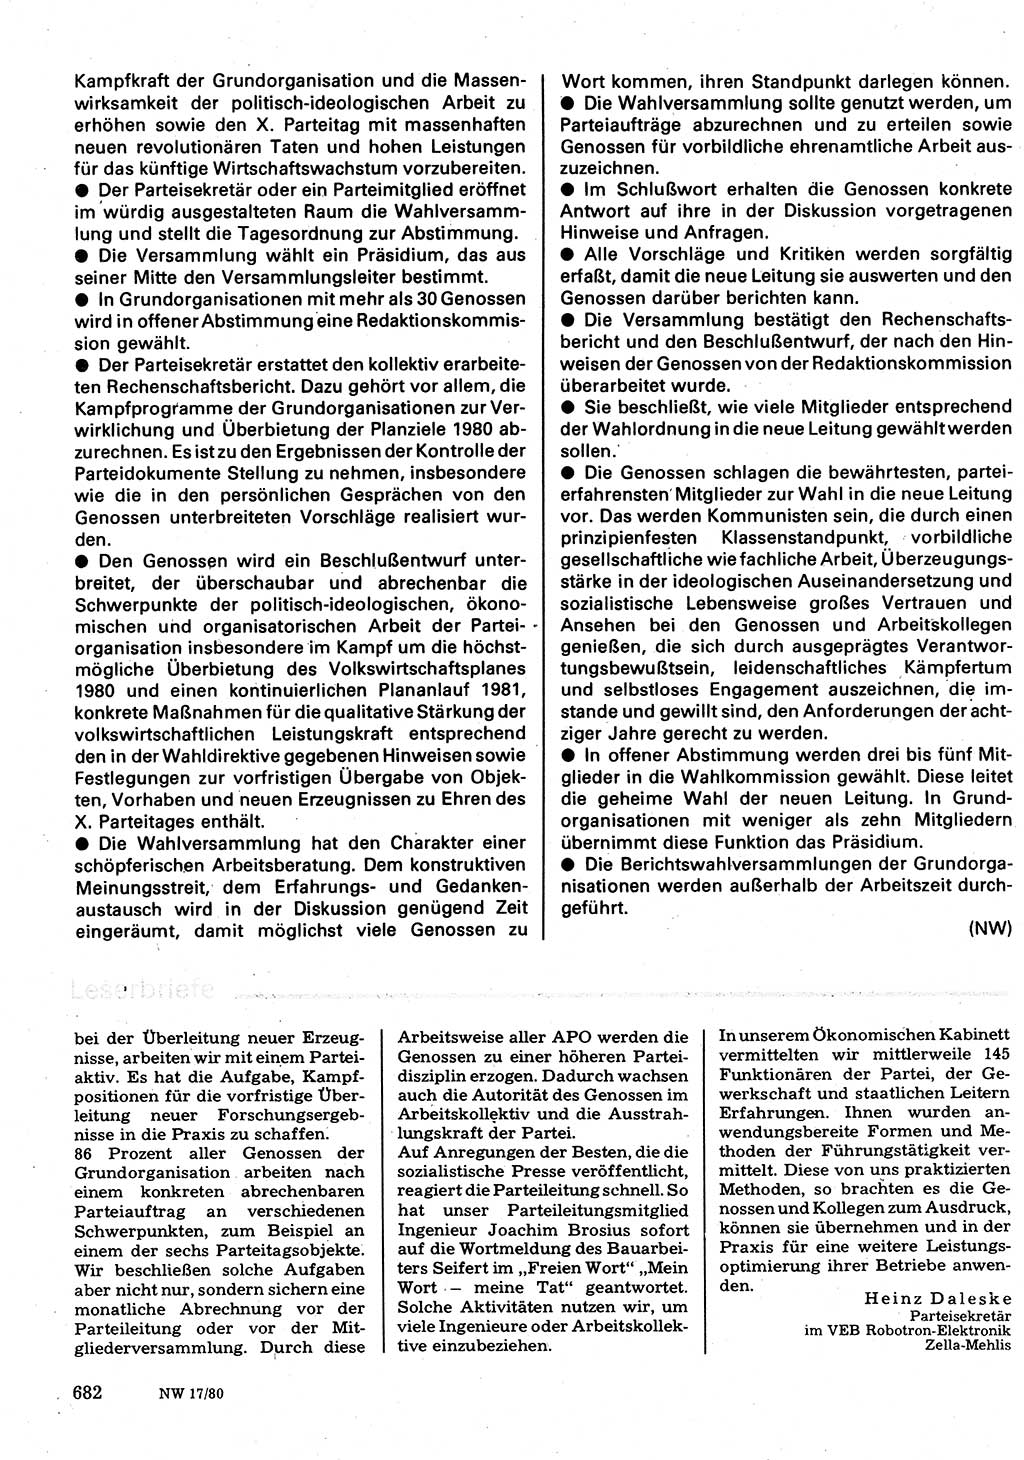 Neuer Weg (NW), Organ des Zentralkomitees (ZK) der SED (Sozialistische Einheitspartei Deutschlands) für Fragen des Parteilebens, 35. Jahrgang [Deutsche Demokratische Republik (DDR)] 1980, Seite 682 (NW ZK SED DDR 1980, S. 682)